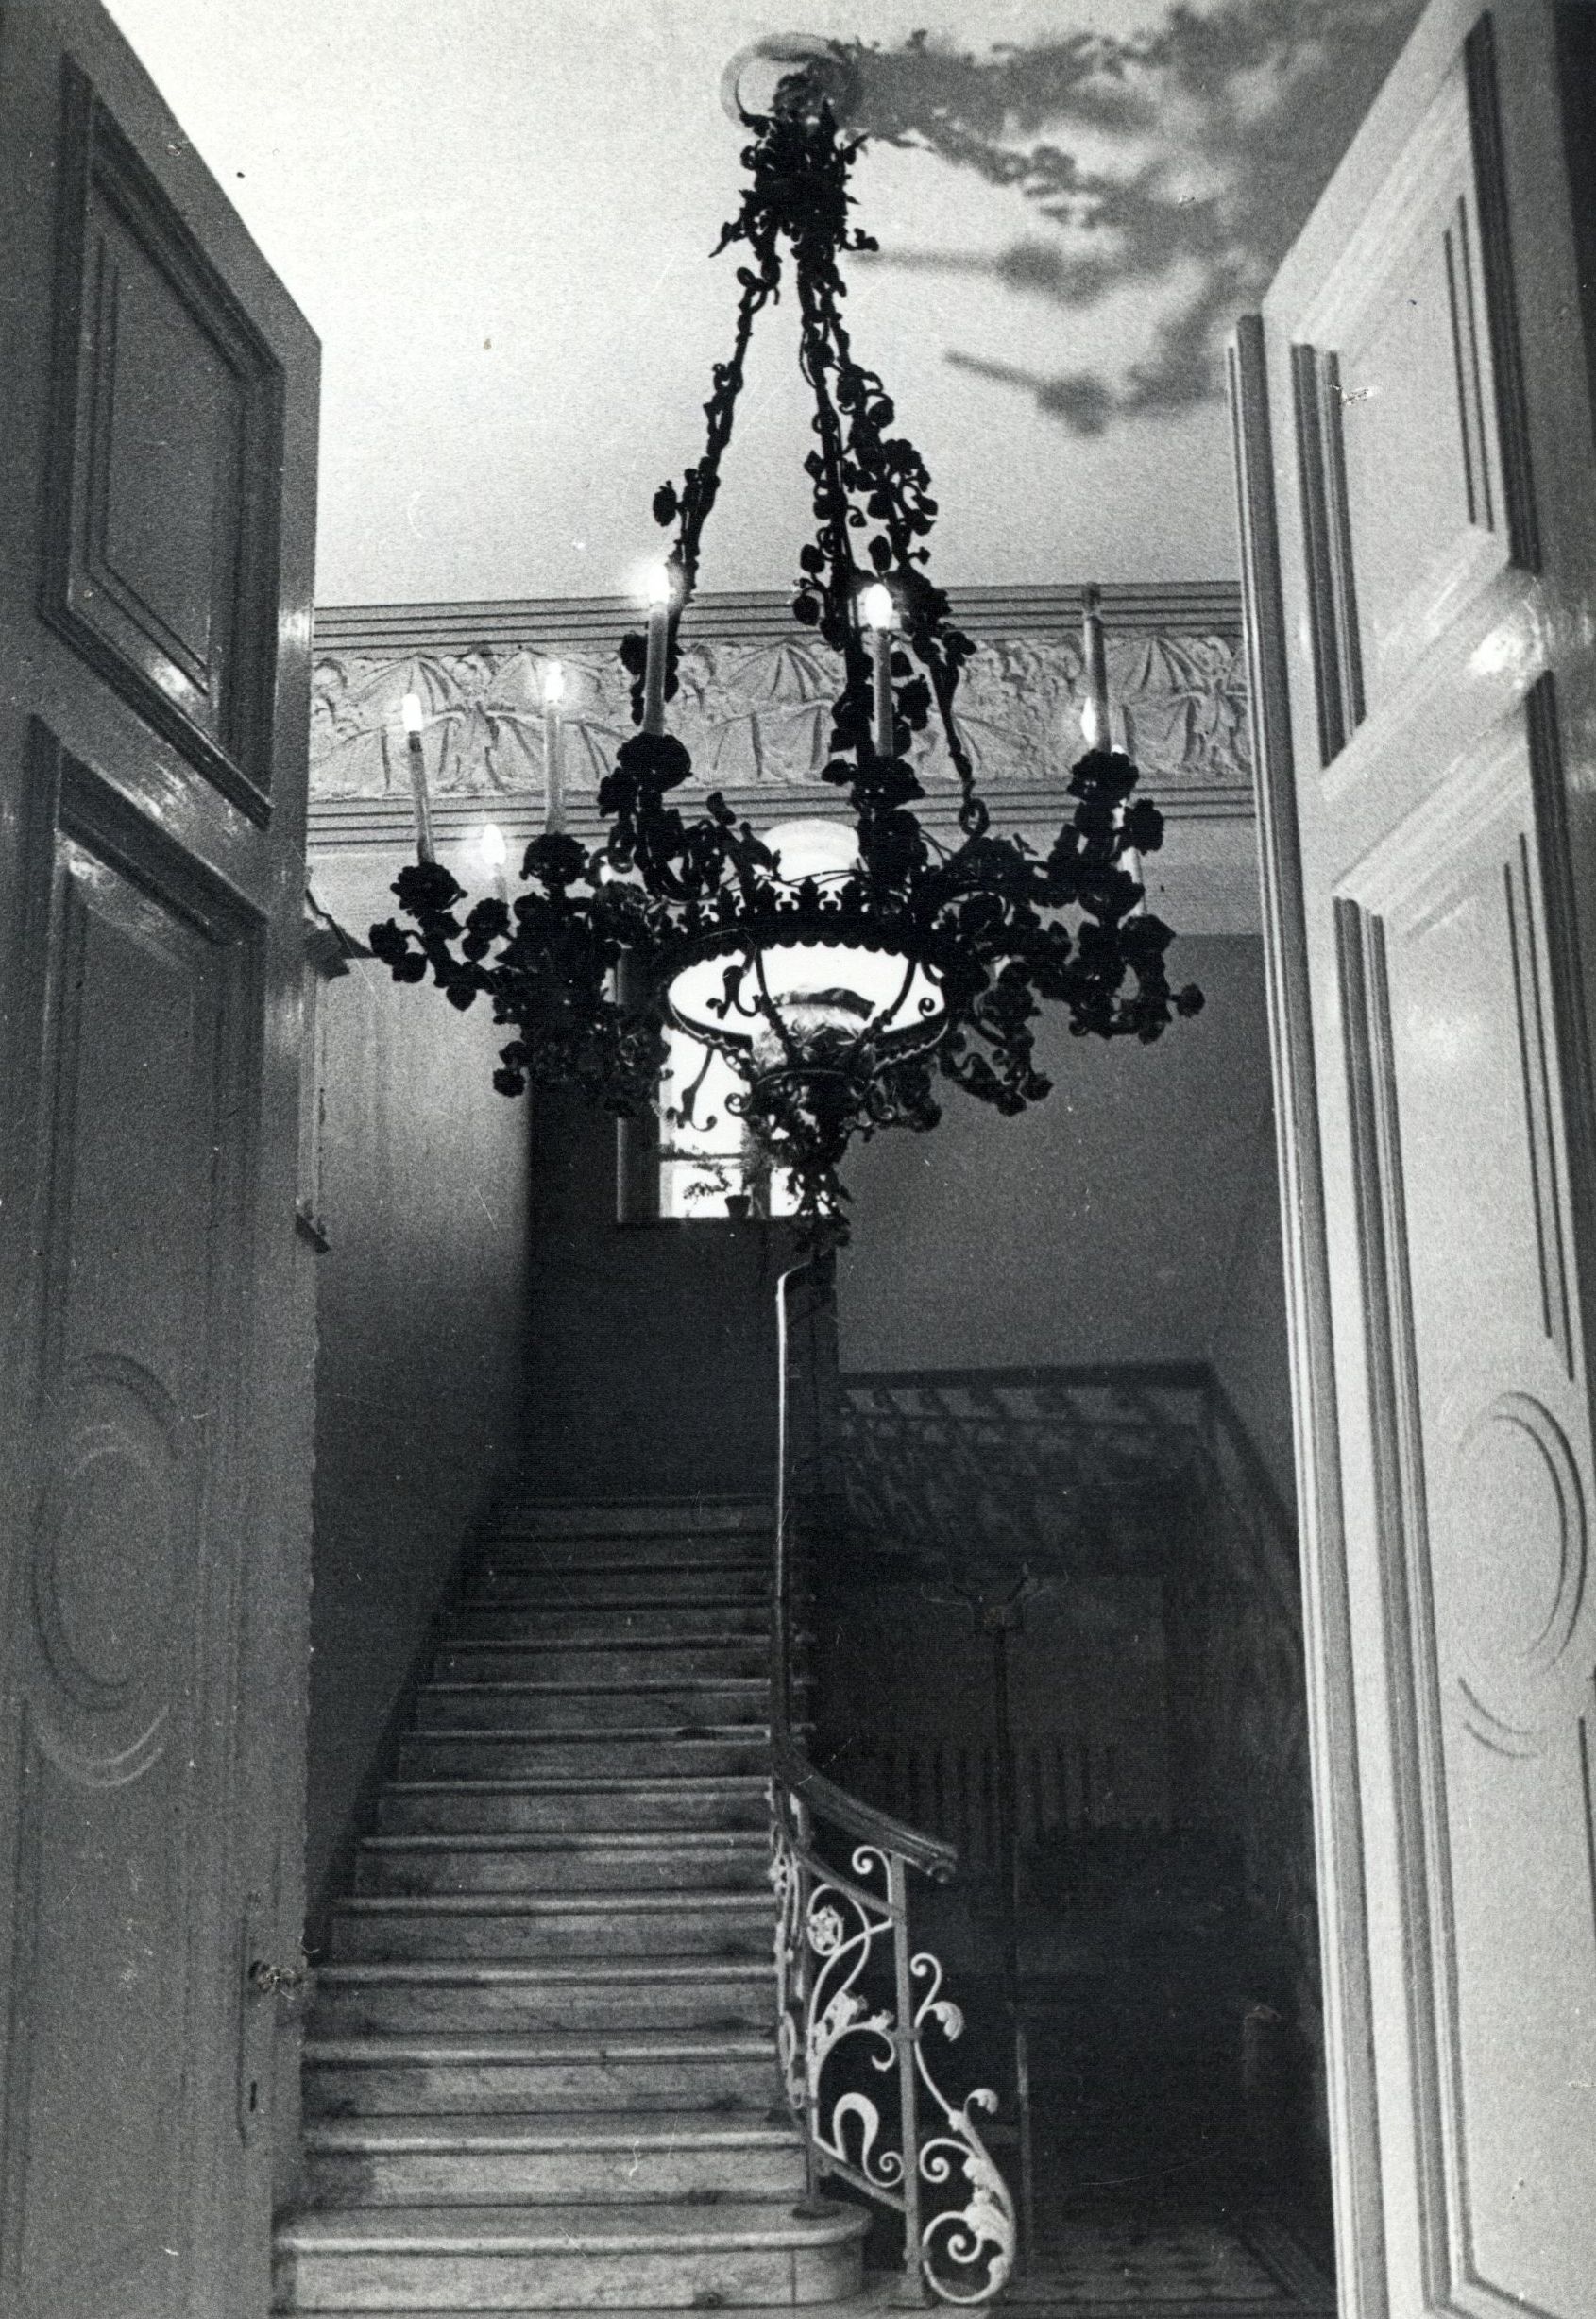 Chandelier at the P. Vileišis Palace. Photo by Juozas Grikienis, around 1950–1990, in: Lietuvių literatūros ir tautosakos institutas, 20759